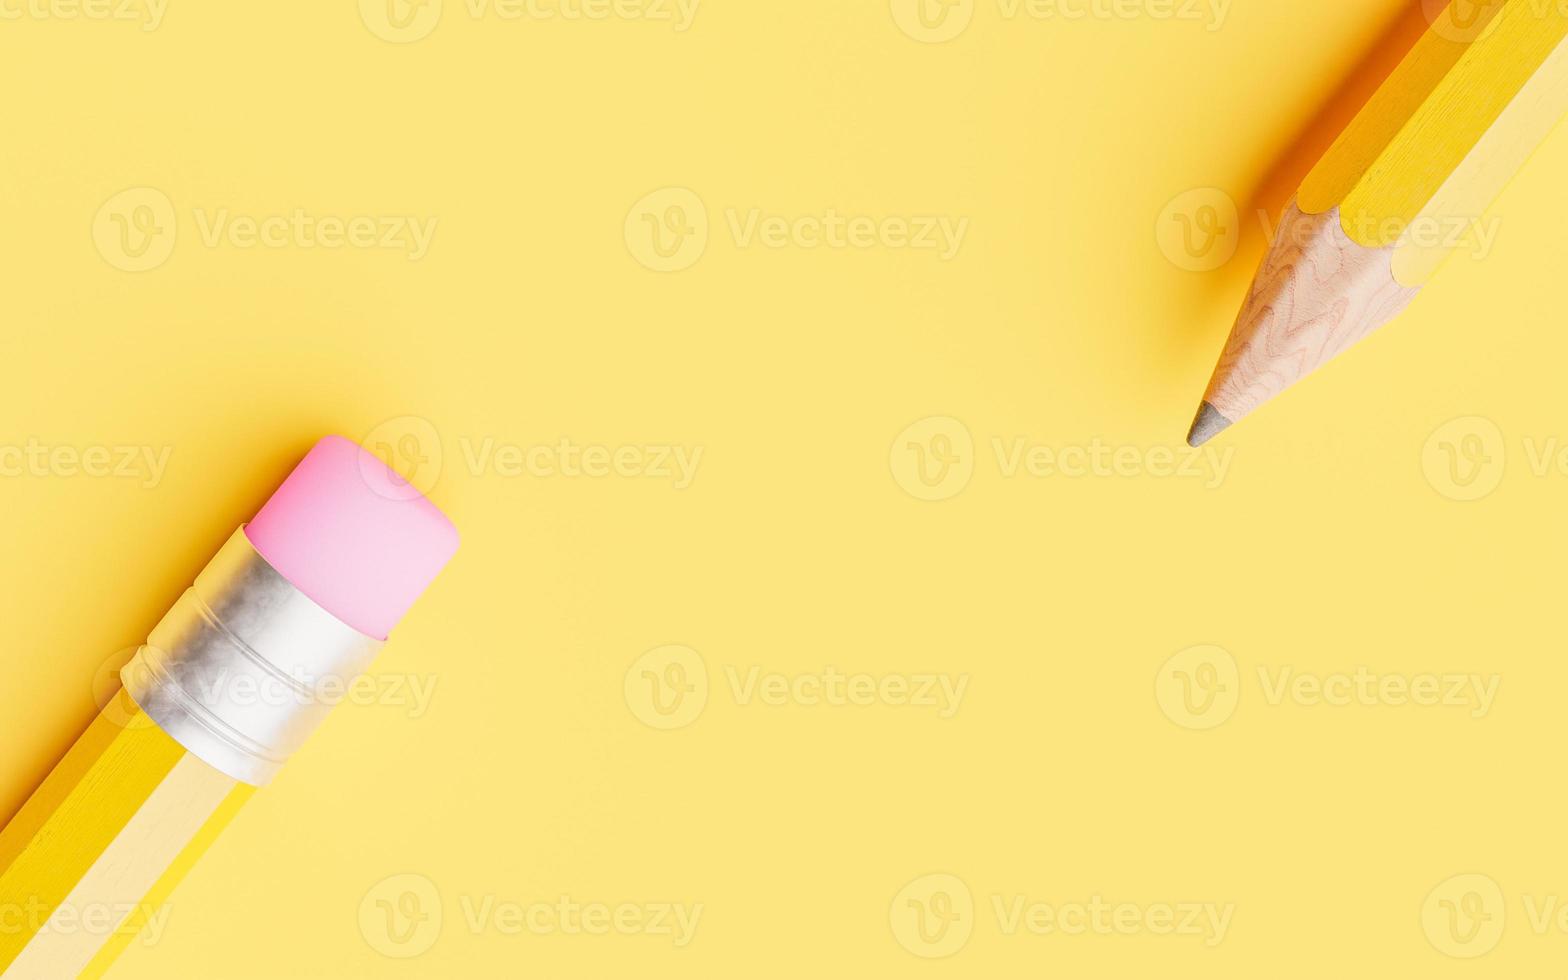 Bleistift auf gelbem Grund foto